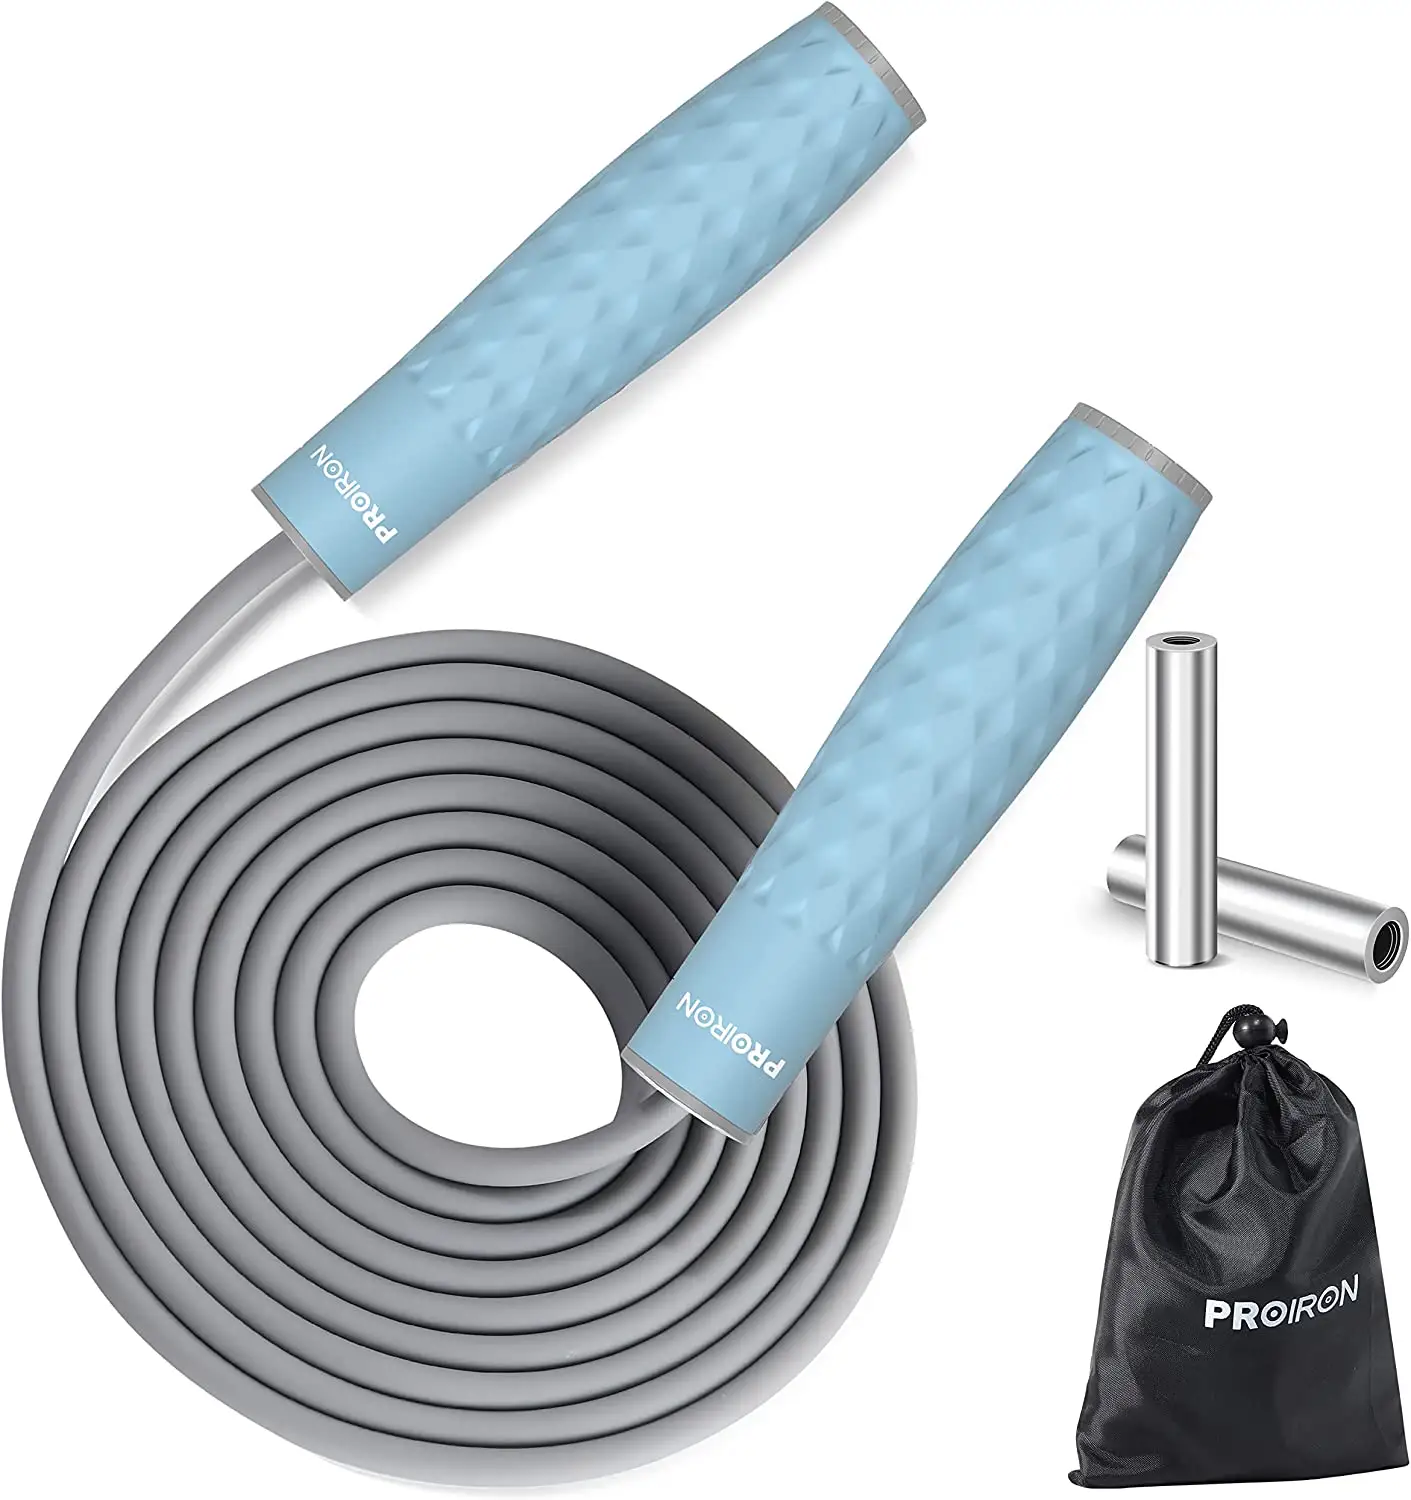 PROIRON-cuerda de saltar para entrenamiento de gimnasio, cuerda de saltar ajustable, con Cable de acero pesado, personalizable, azul